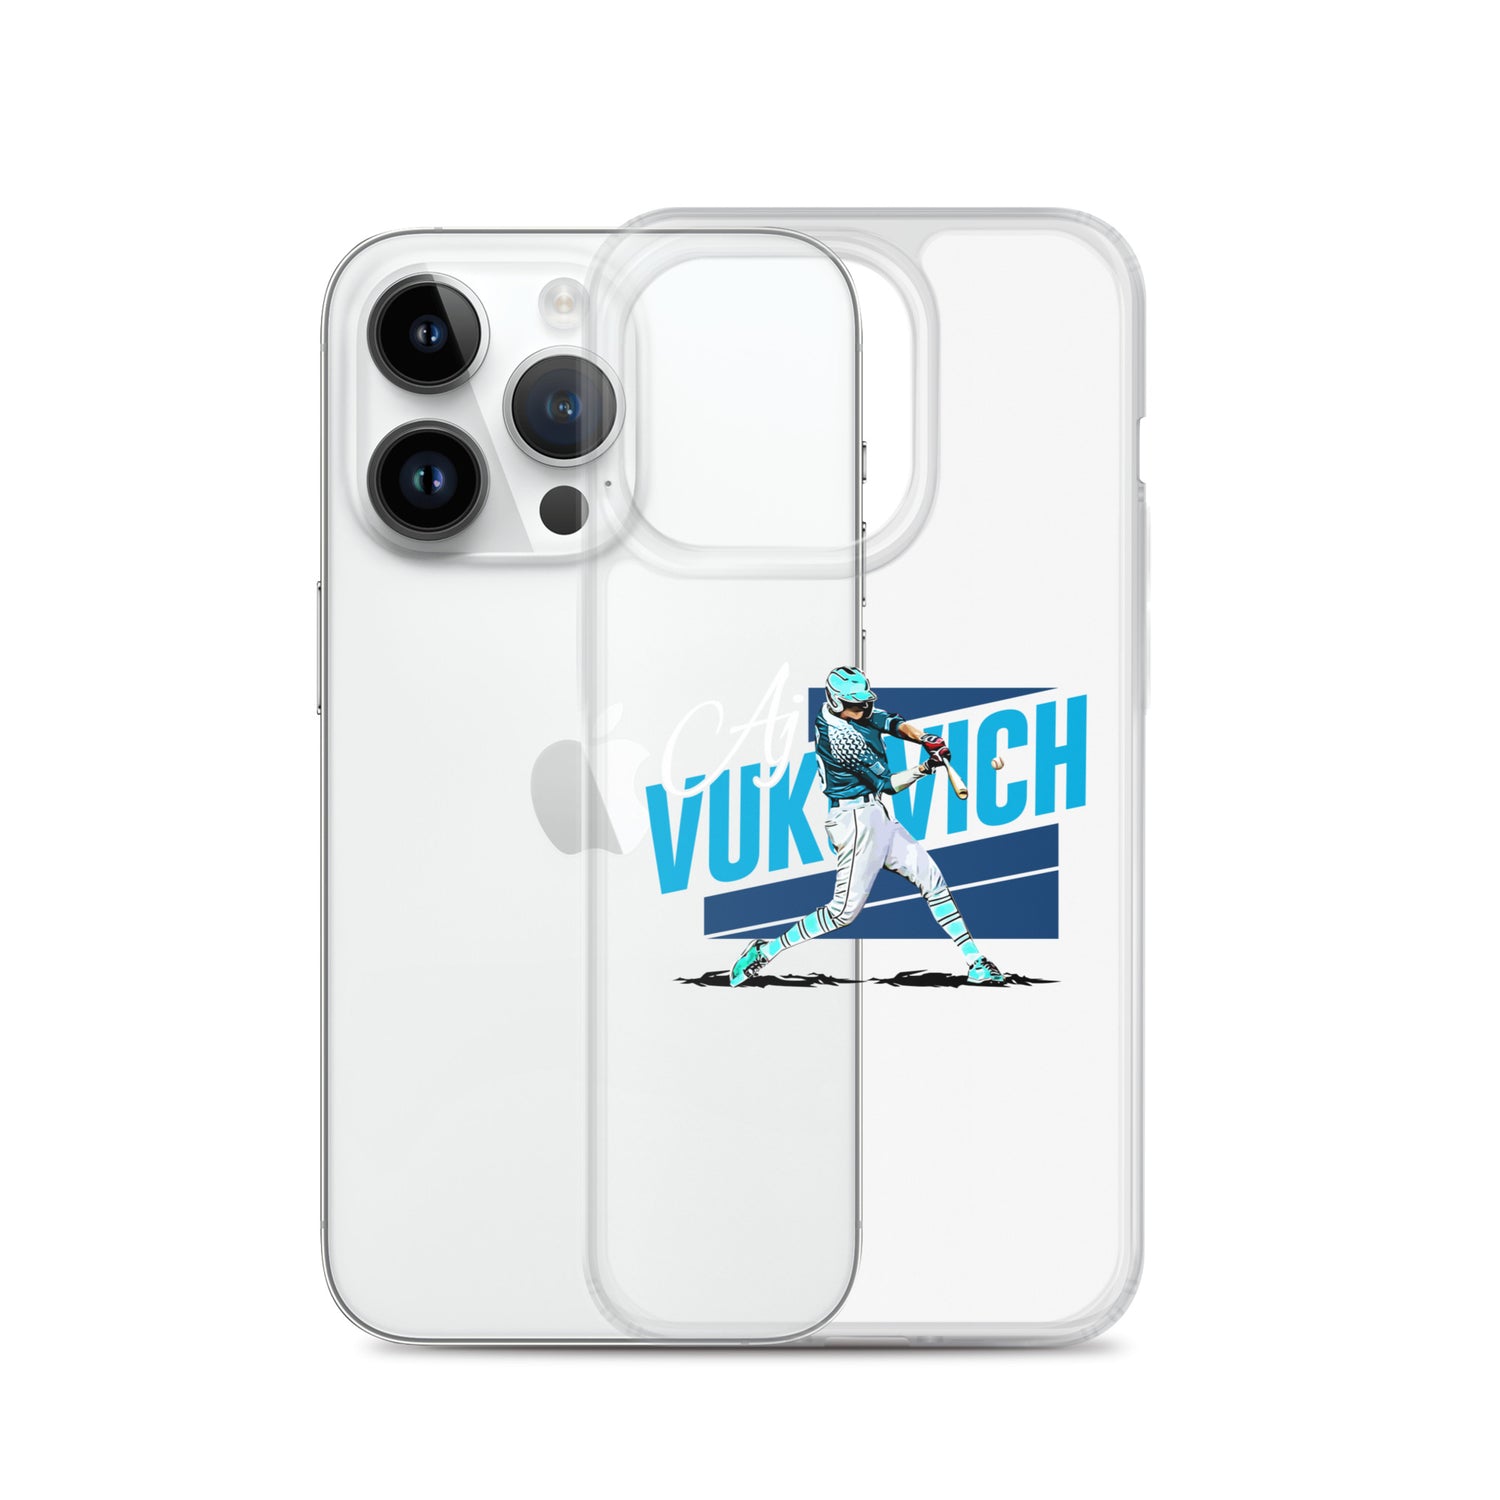 AJ Vukovich "Icon" iPhone® - Fan Arch